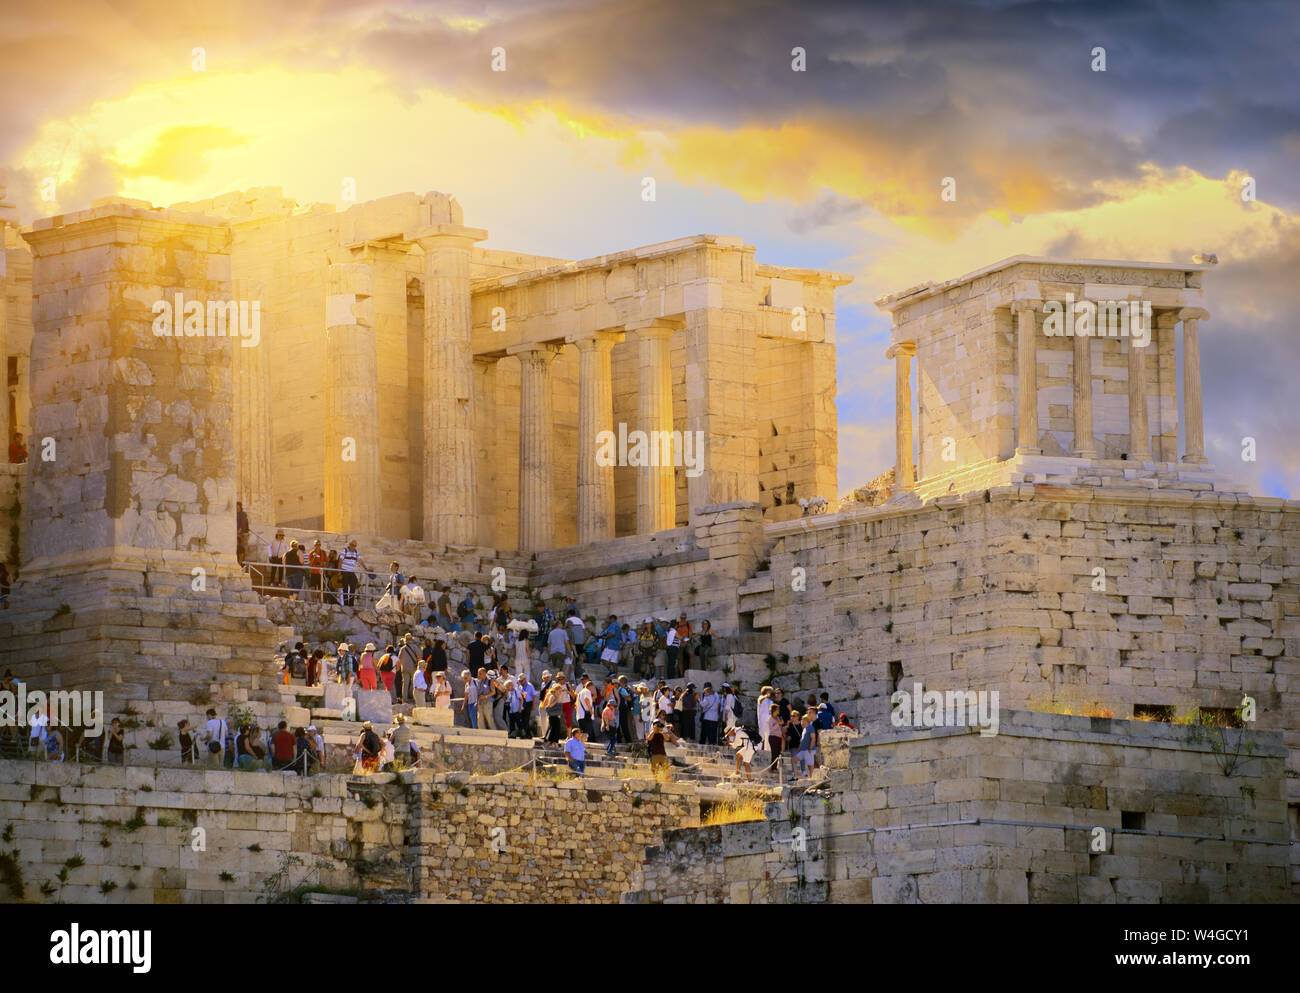 Lever du soleil sur la spectaculaire Acropole d'Athènes antique. Les touristes se promener sur l'acropole d'Athènes dans la matinée. Grèce Banque D'Images